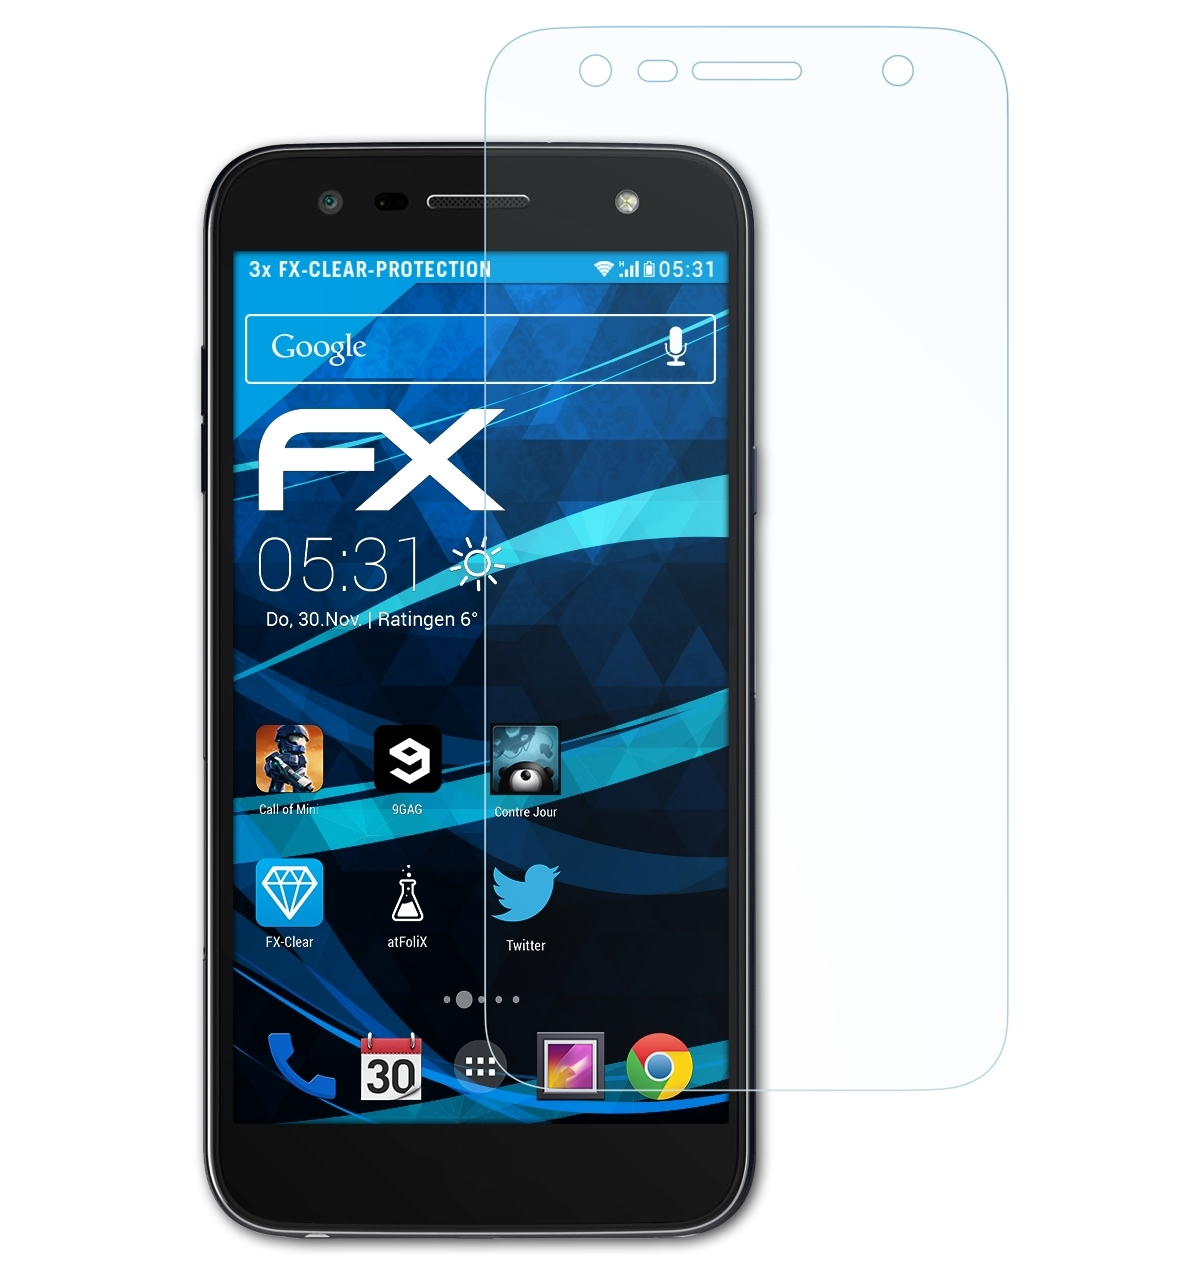 3x K10 Power) FX-Clear ATFOLIX LG Displayschutz(für